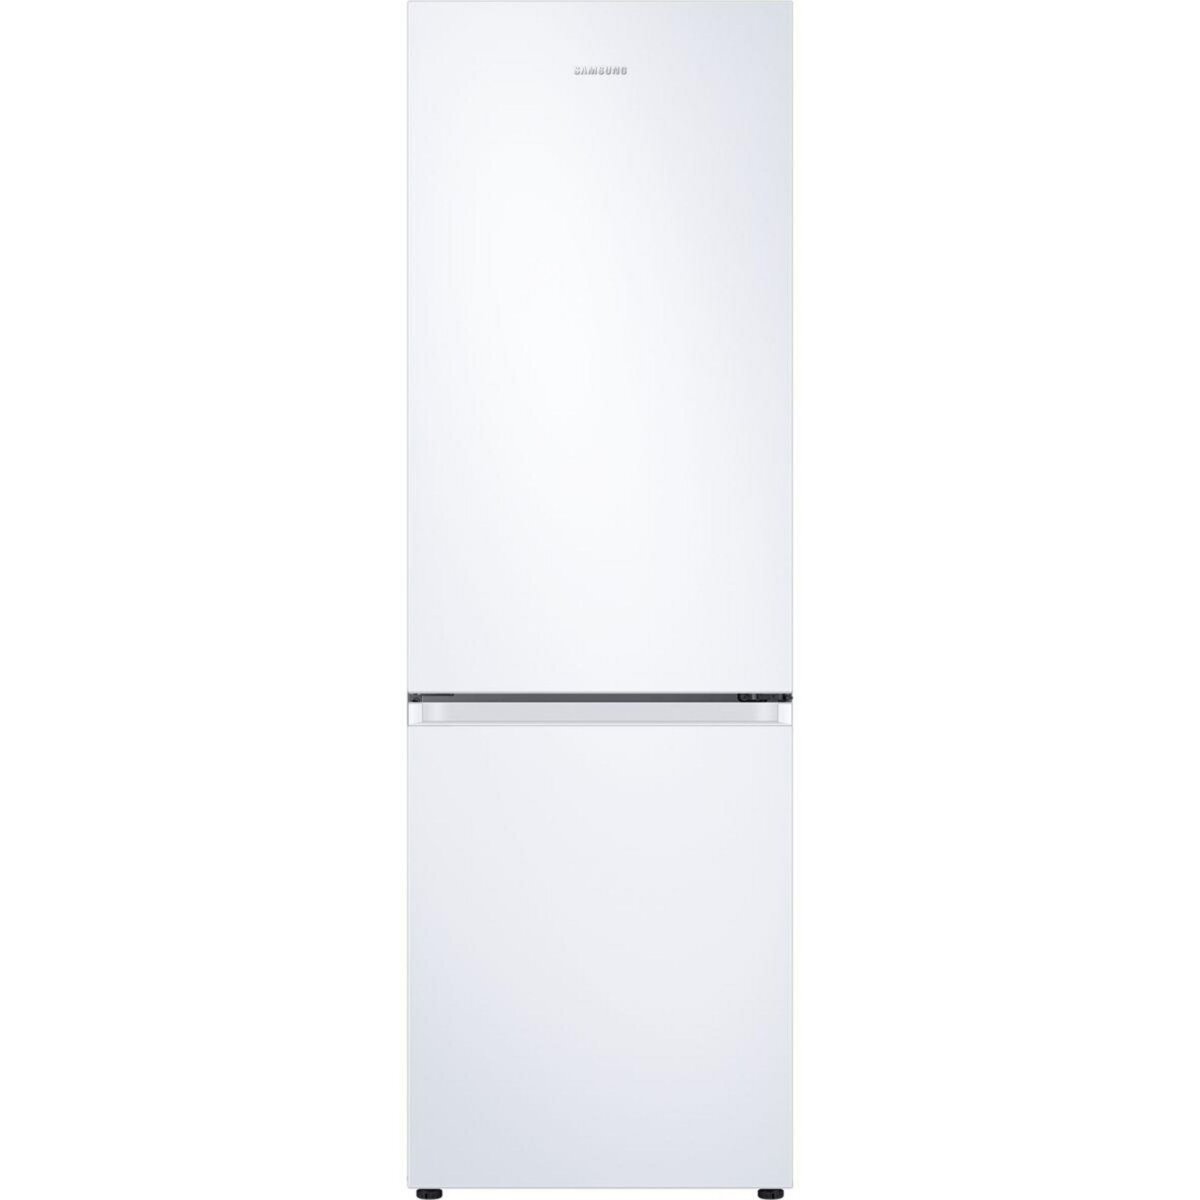 Samsung Réfrigérateur combiné RB34T600CWW